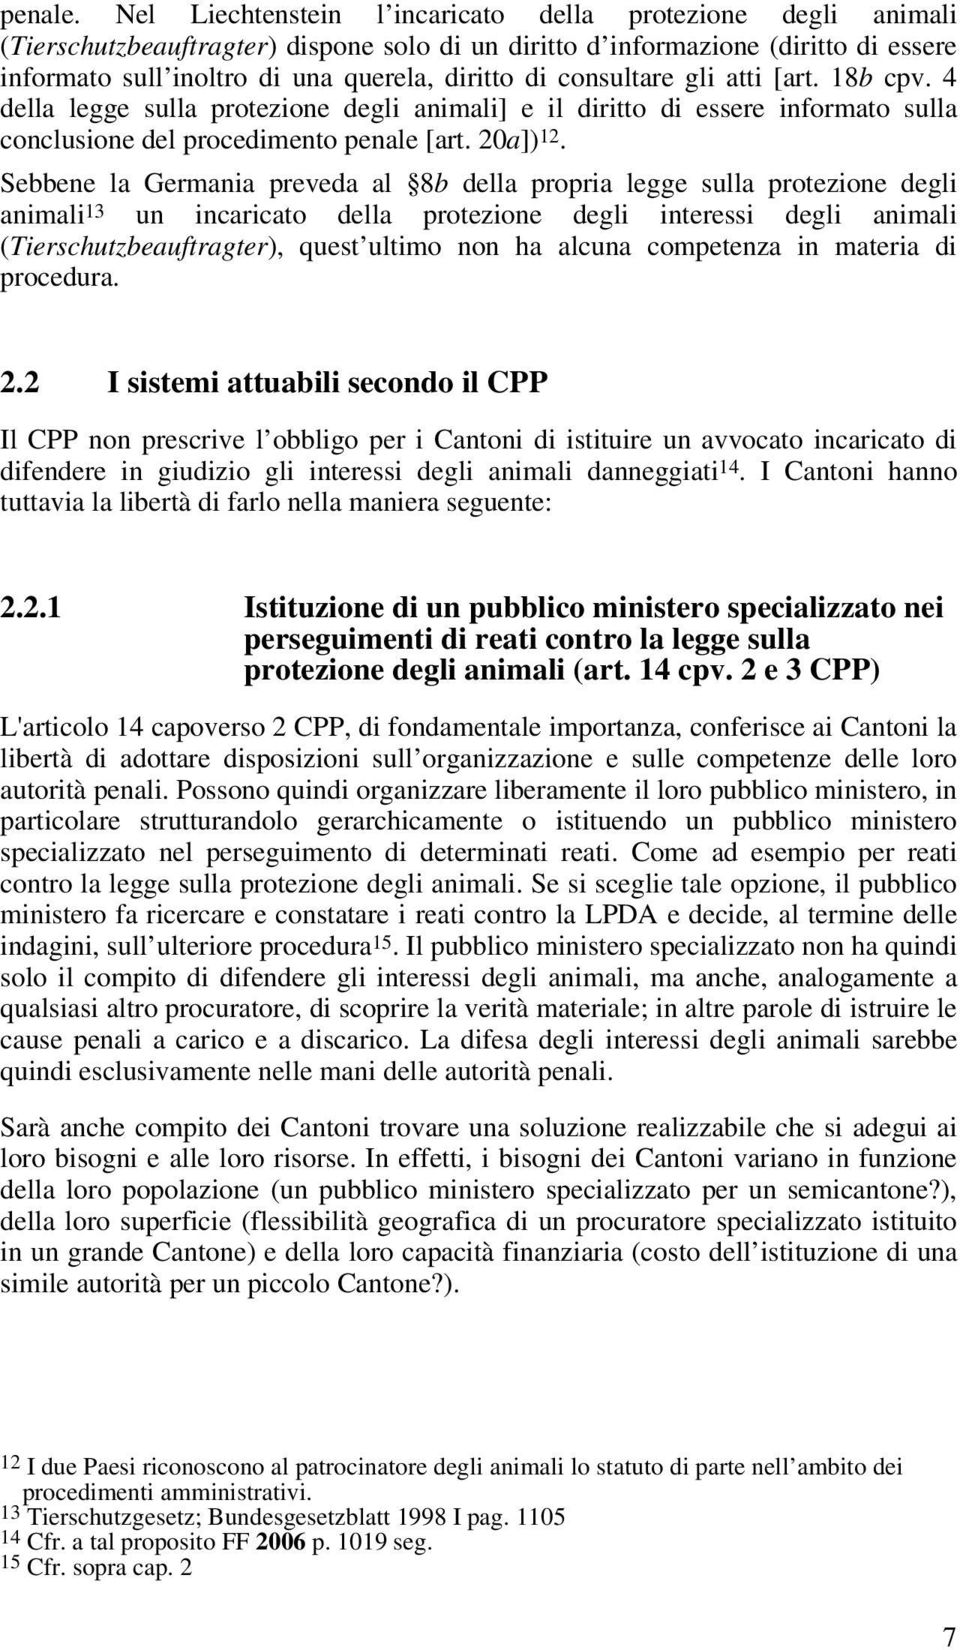 consultare gli atti [art. 18b cpv. 4 della legge sulla protezione degli animali] e il diritto di essere informato sulla conclusione del procedimento penale [art. 20a]) 12.